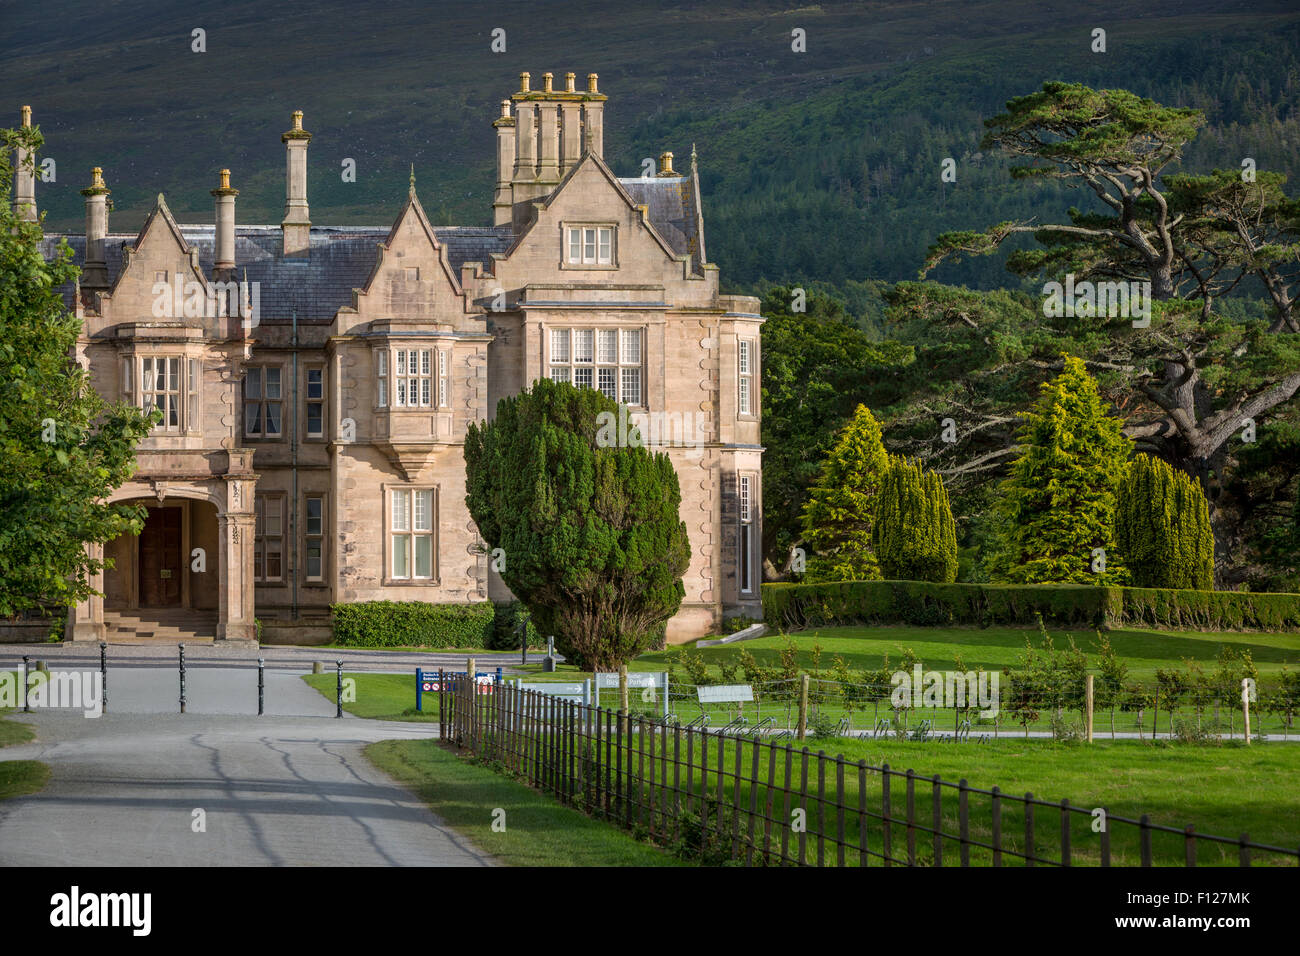 Muckross House and Estate near Killarney, County Kerry, Ireland Stock Photo